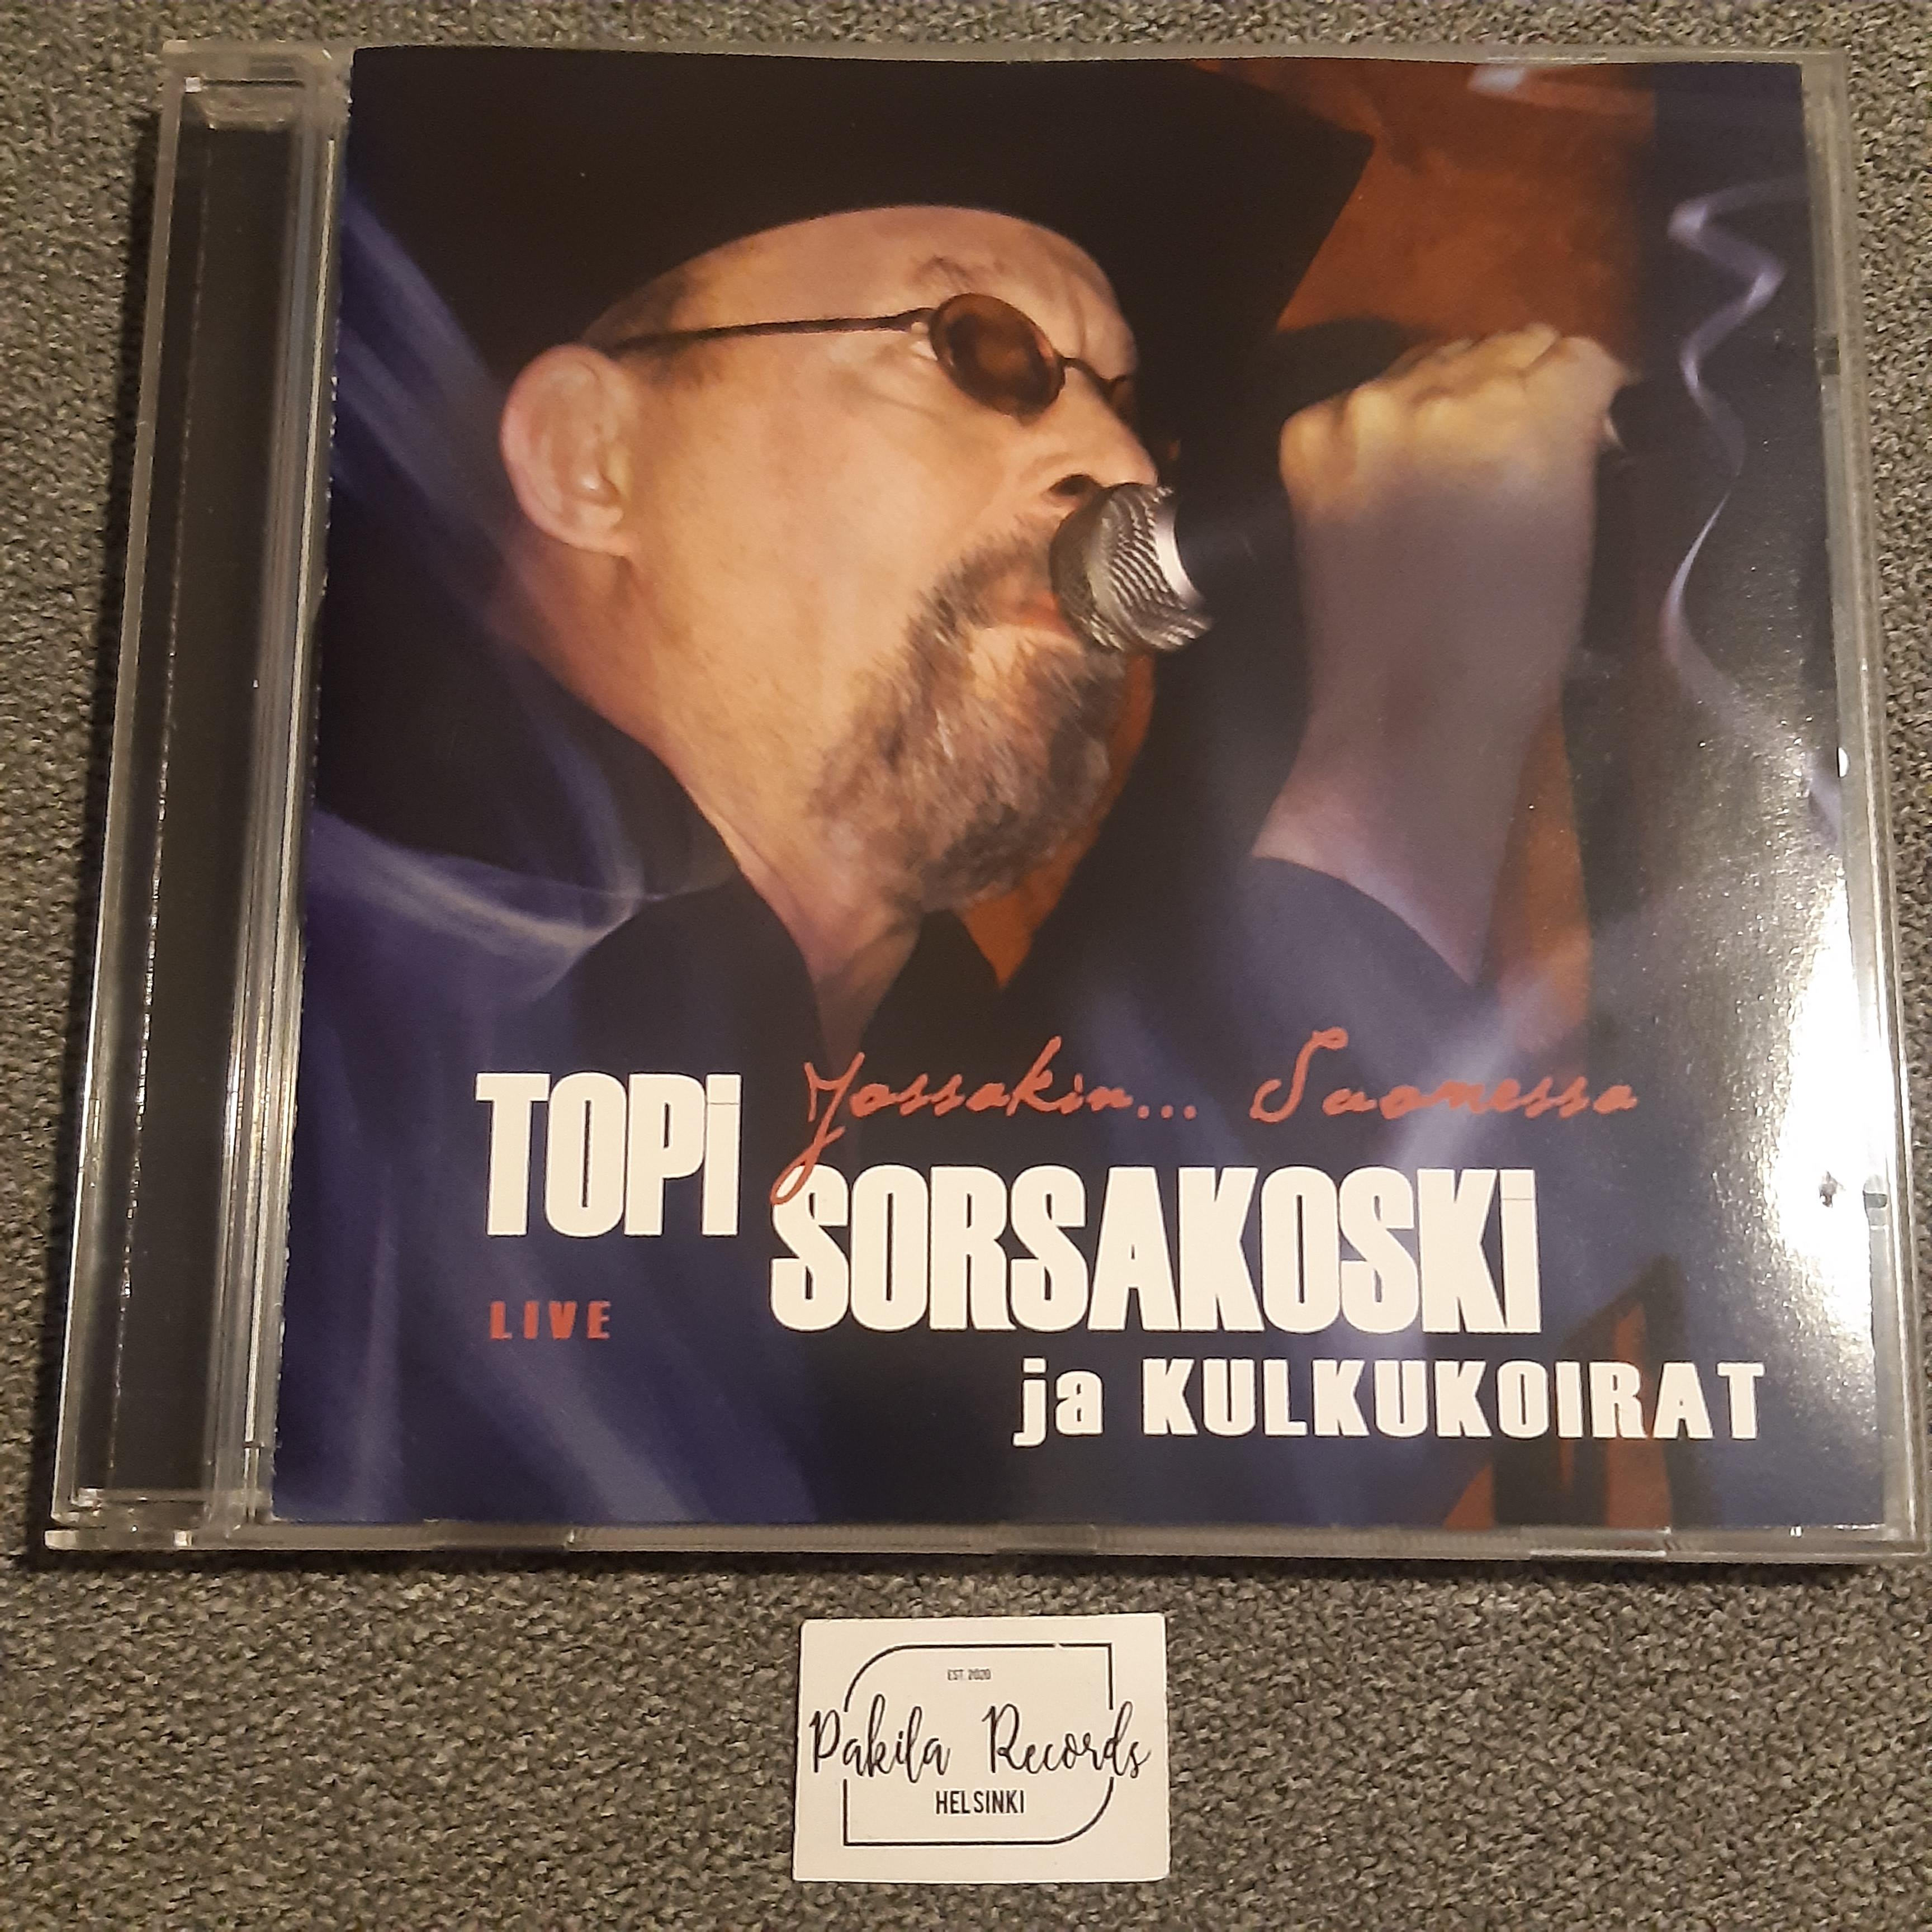 Topi Sorsakoski ja Kulkukoirat - Jossakin... Suomessa Live - CD (käytetty)